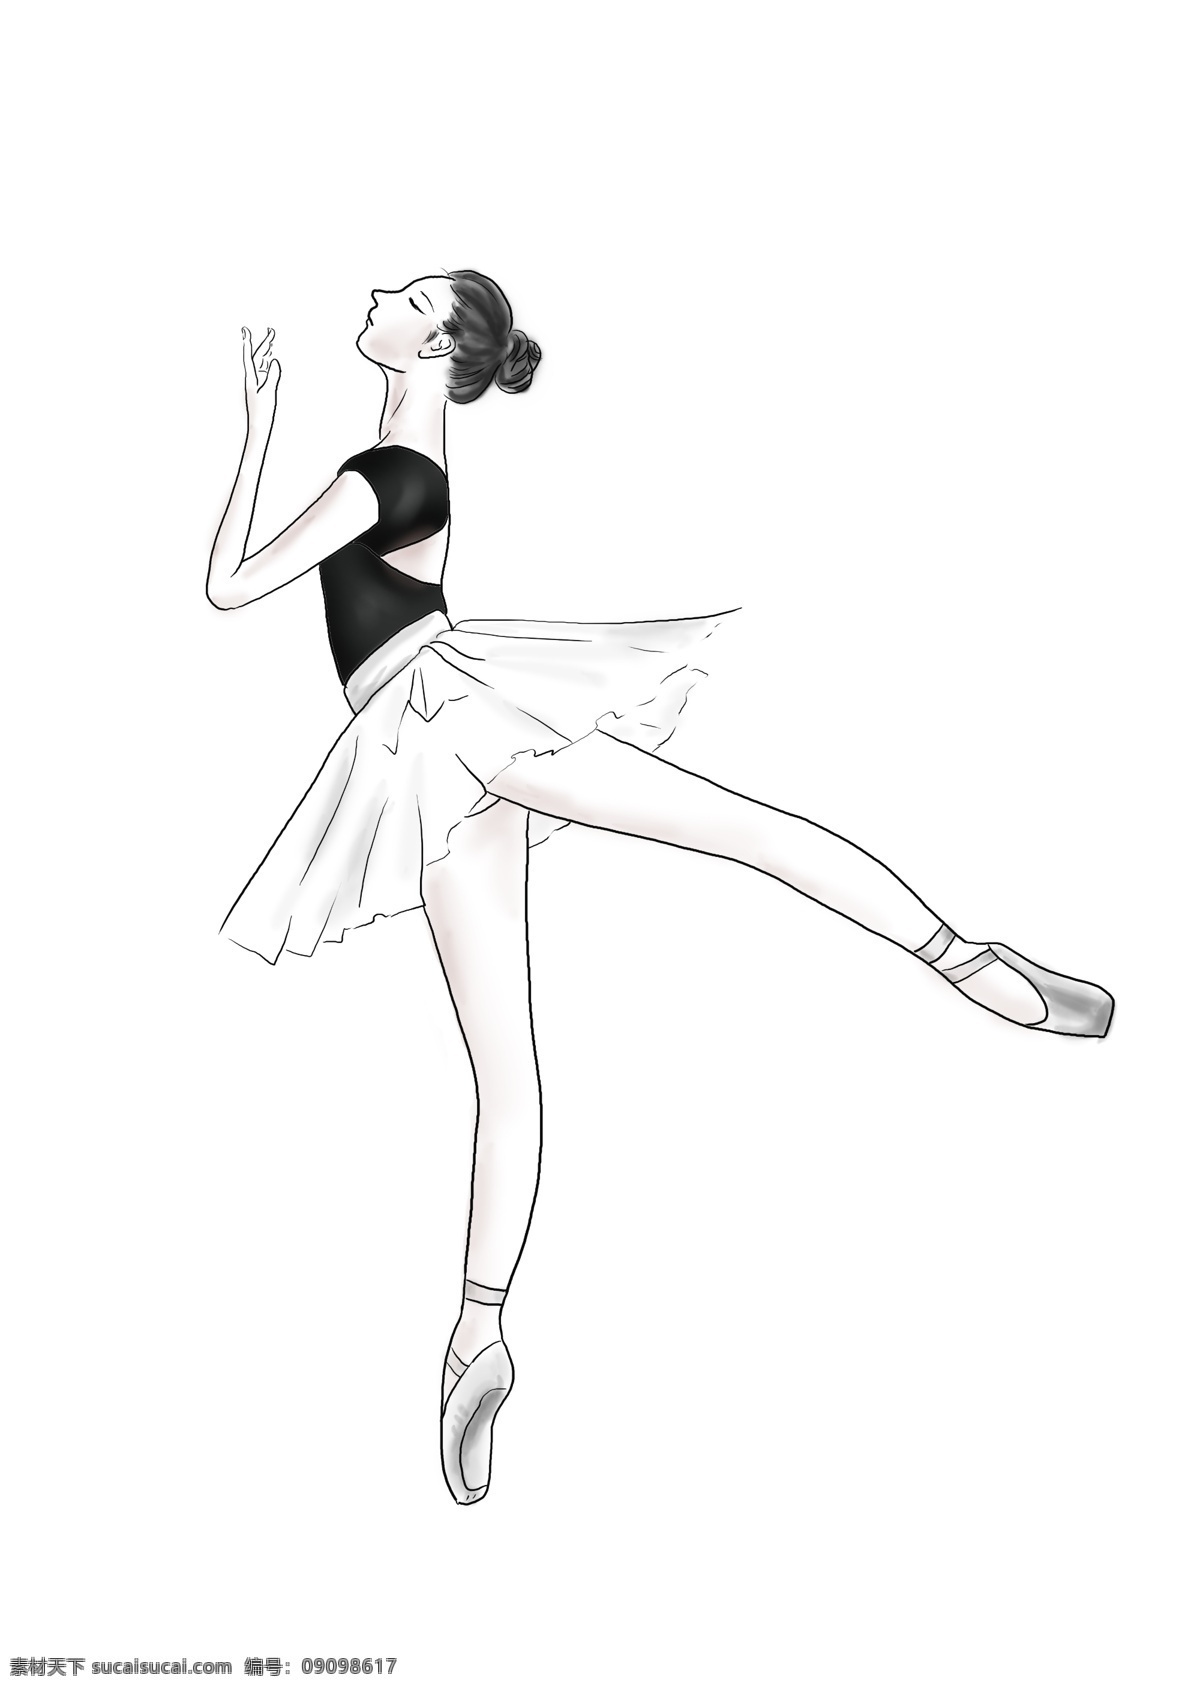 手绘 跳 芭蕾舞 女孩 舞蹈 表演 舞台 舞鞋 女人 女性 女生 插画 线条 黑白 丸子头 优雅